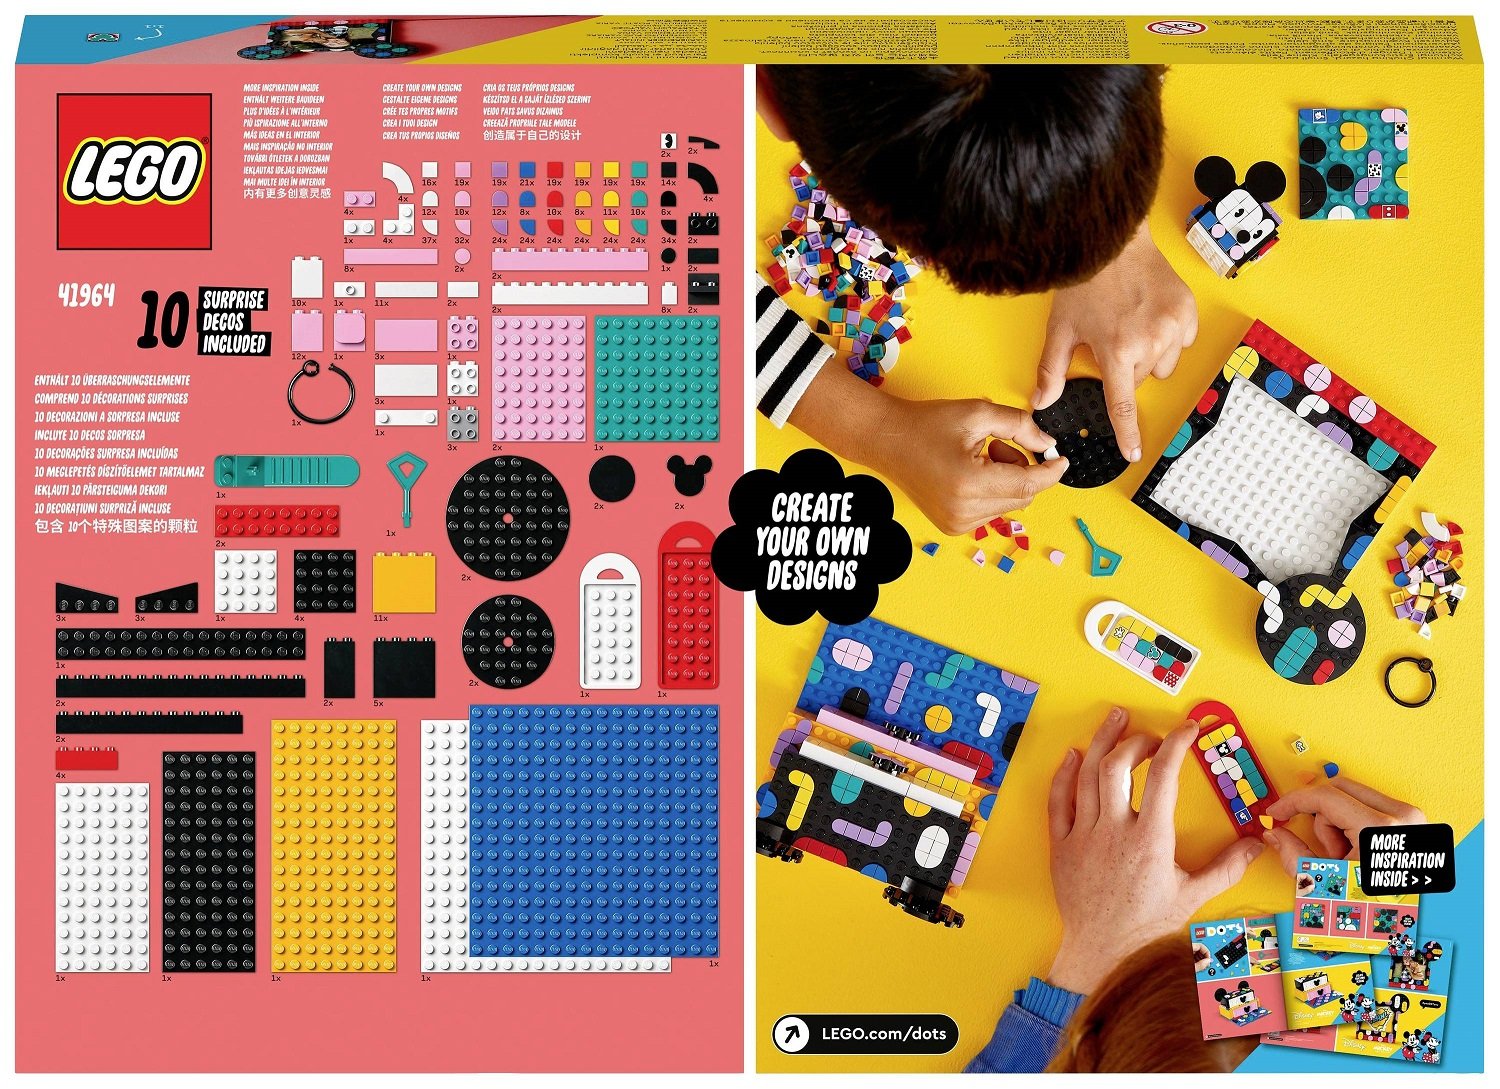 Конструктор LEGO DOTs Міккі Маус і Мінні Маус, Назад до школи, 669 елементів (41964) - фото 10